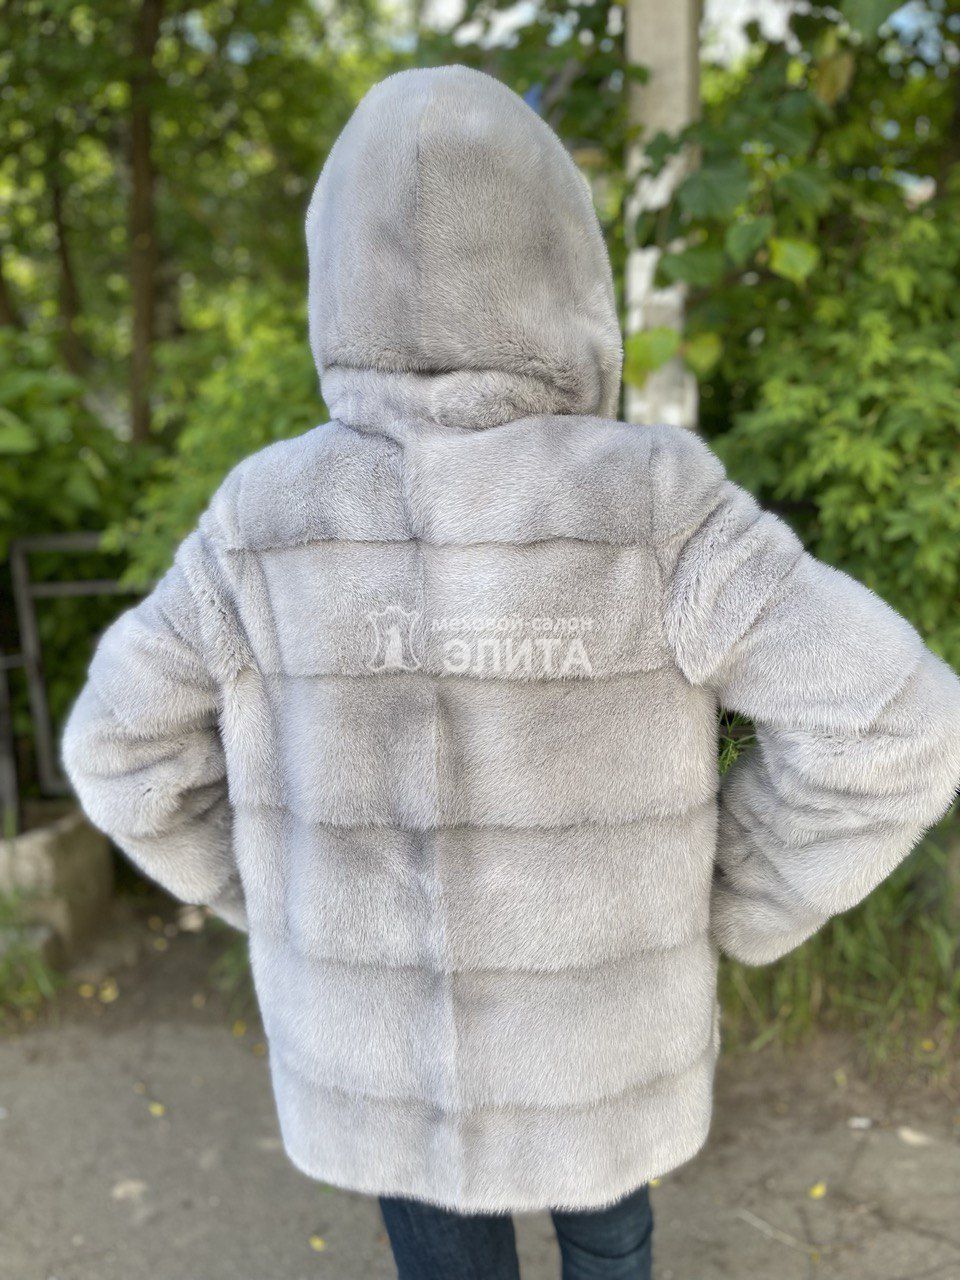 Куртка из норки S-1069, р-р 42-48, цена 122500 рублей в интернет-магазине кожи и меха ЭЛИТА. Вид 2